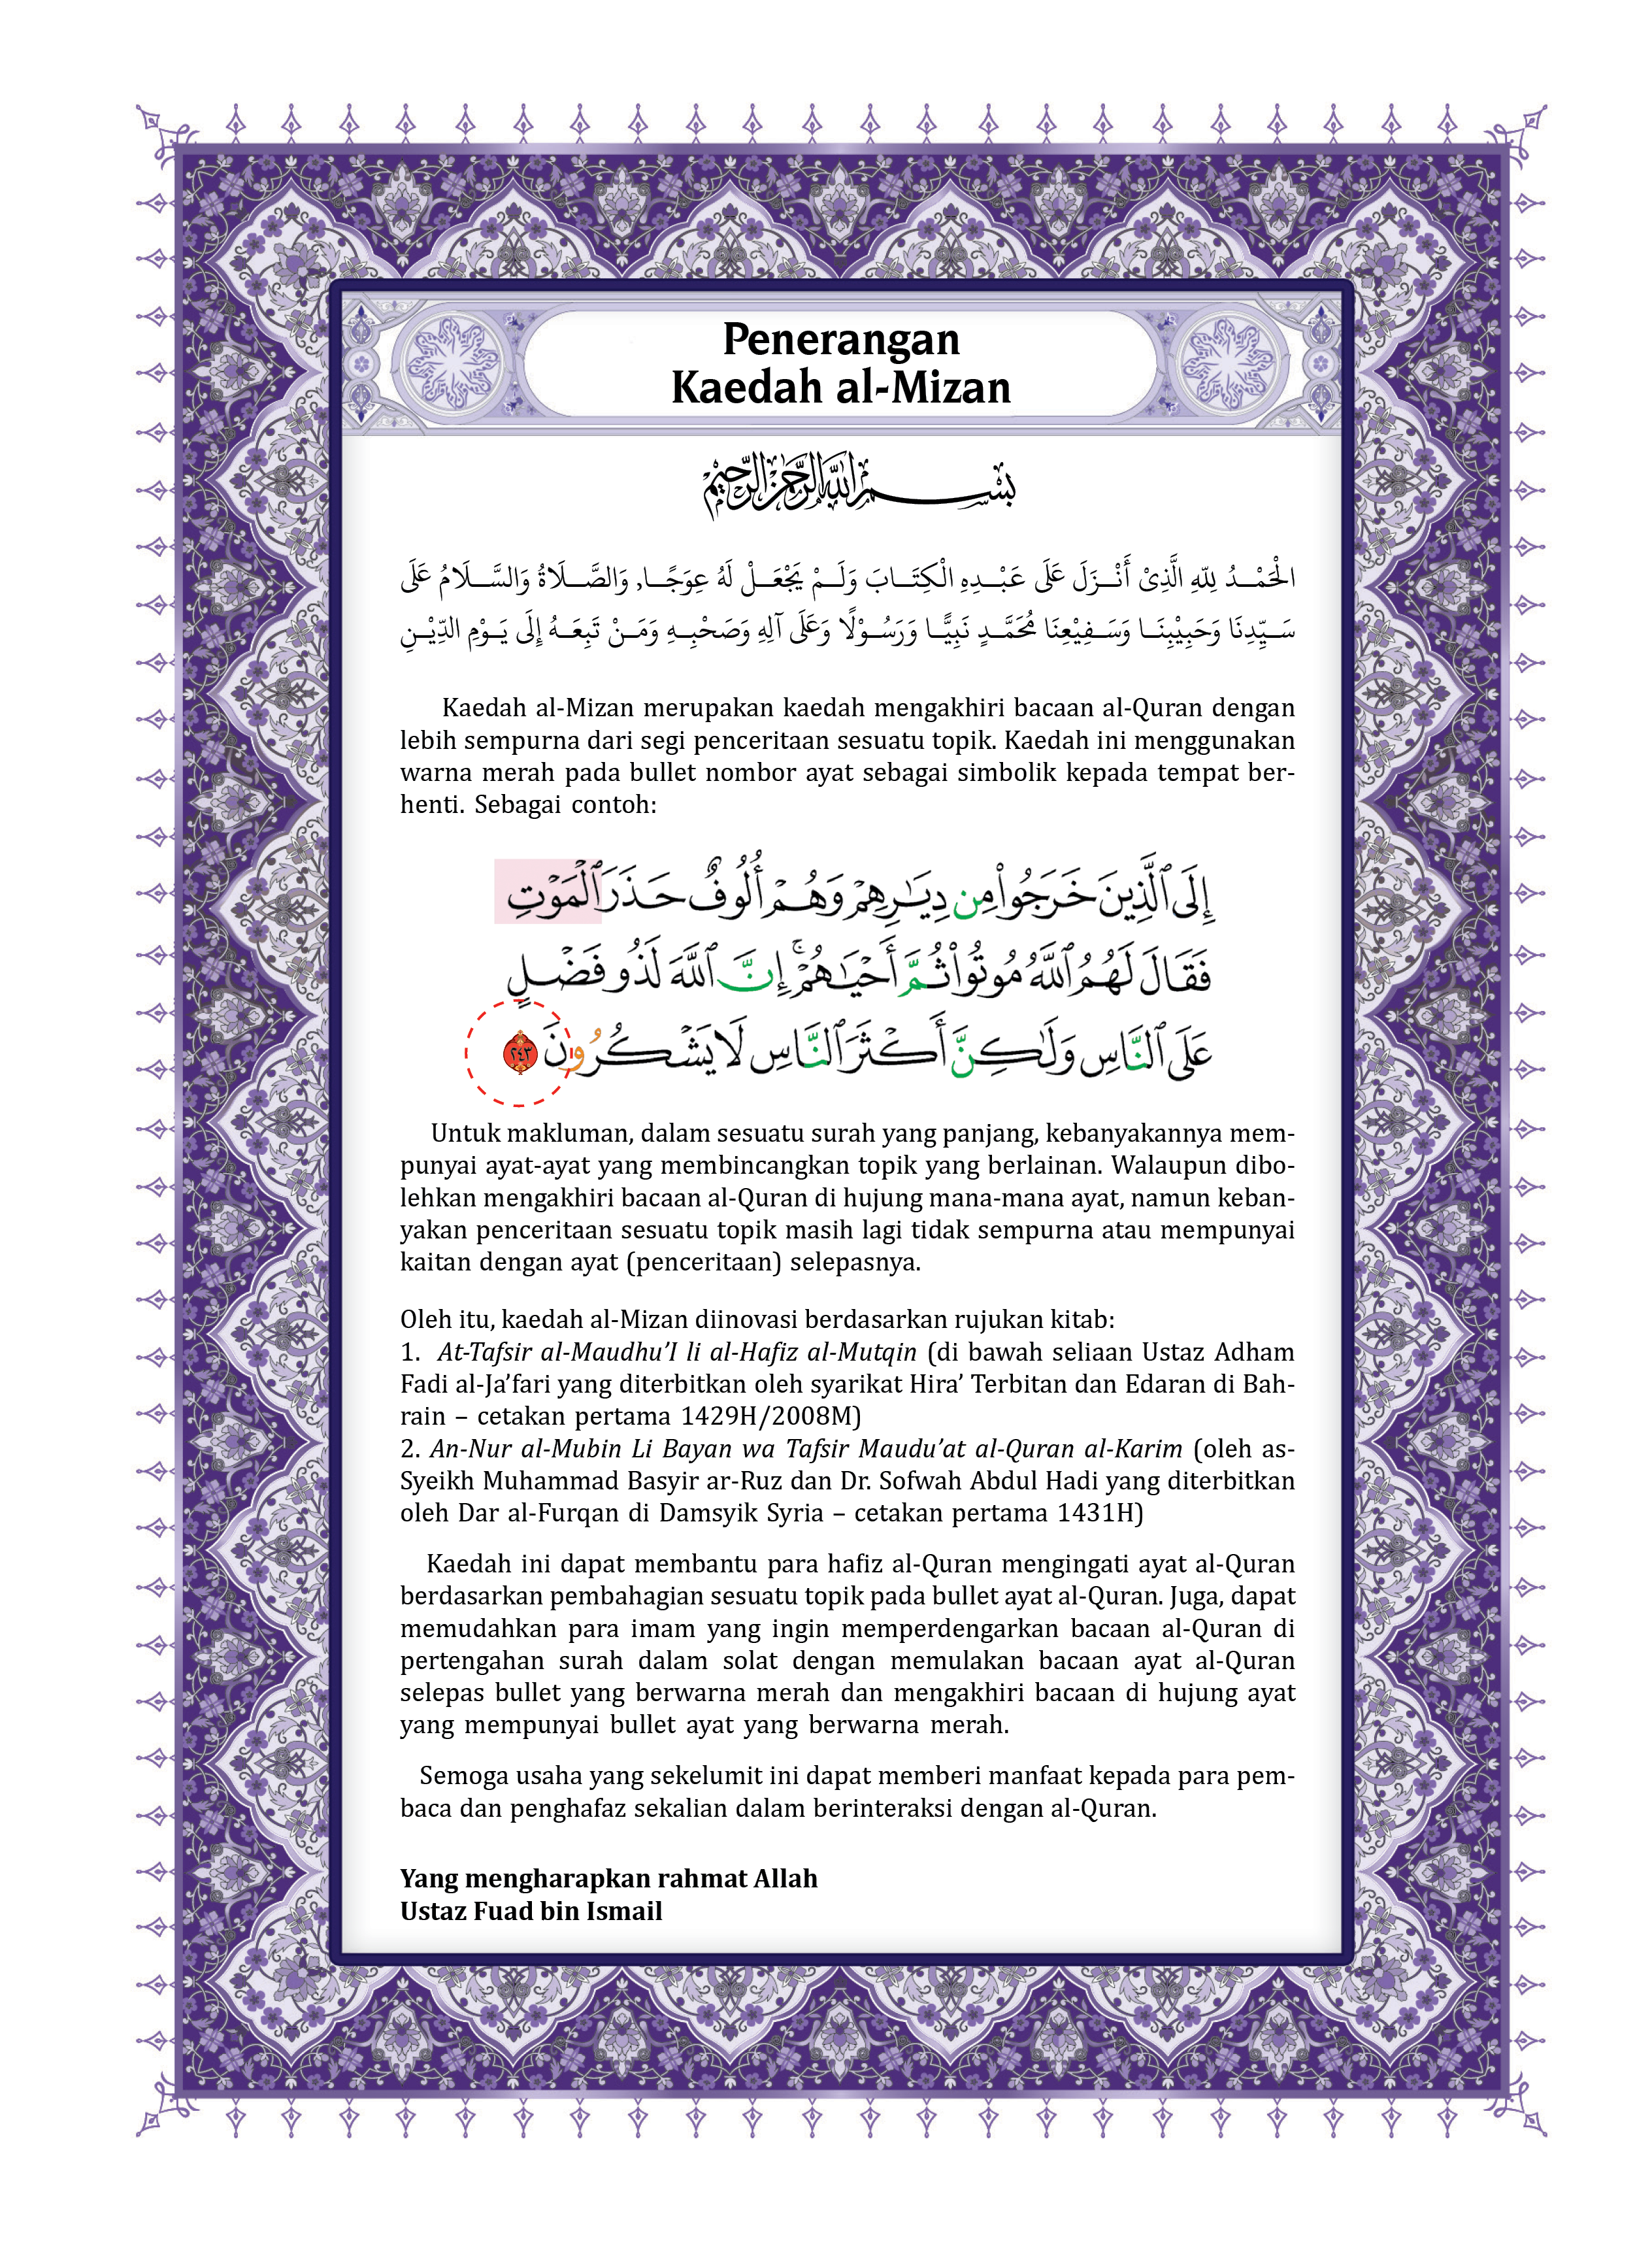 Al-Quran Al-Karim & Terjemahan Al-Kamil (B5) - (TBAQ1037)